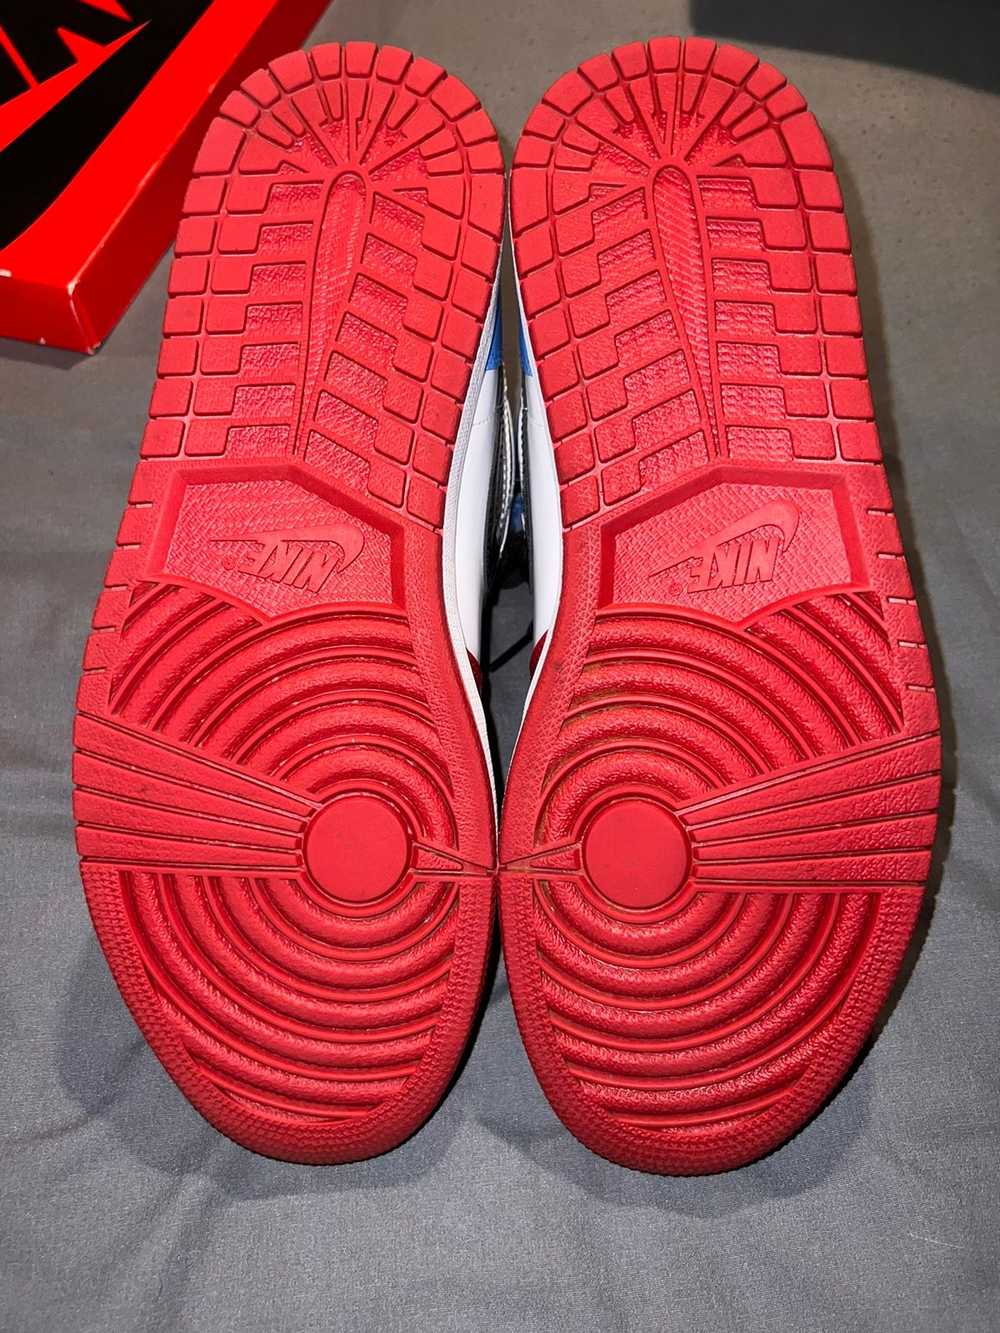 Jordan Brand × Nike AJ1 RETRO HIGH OG FEARLESS - image 5